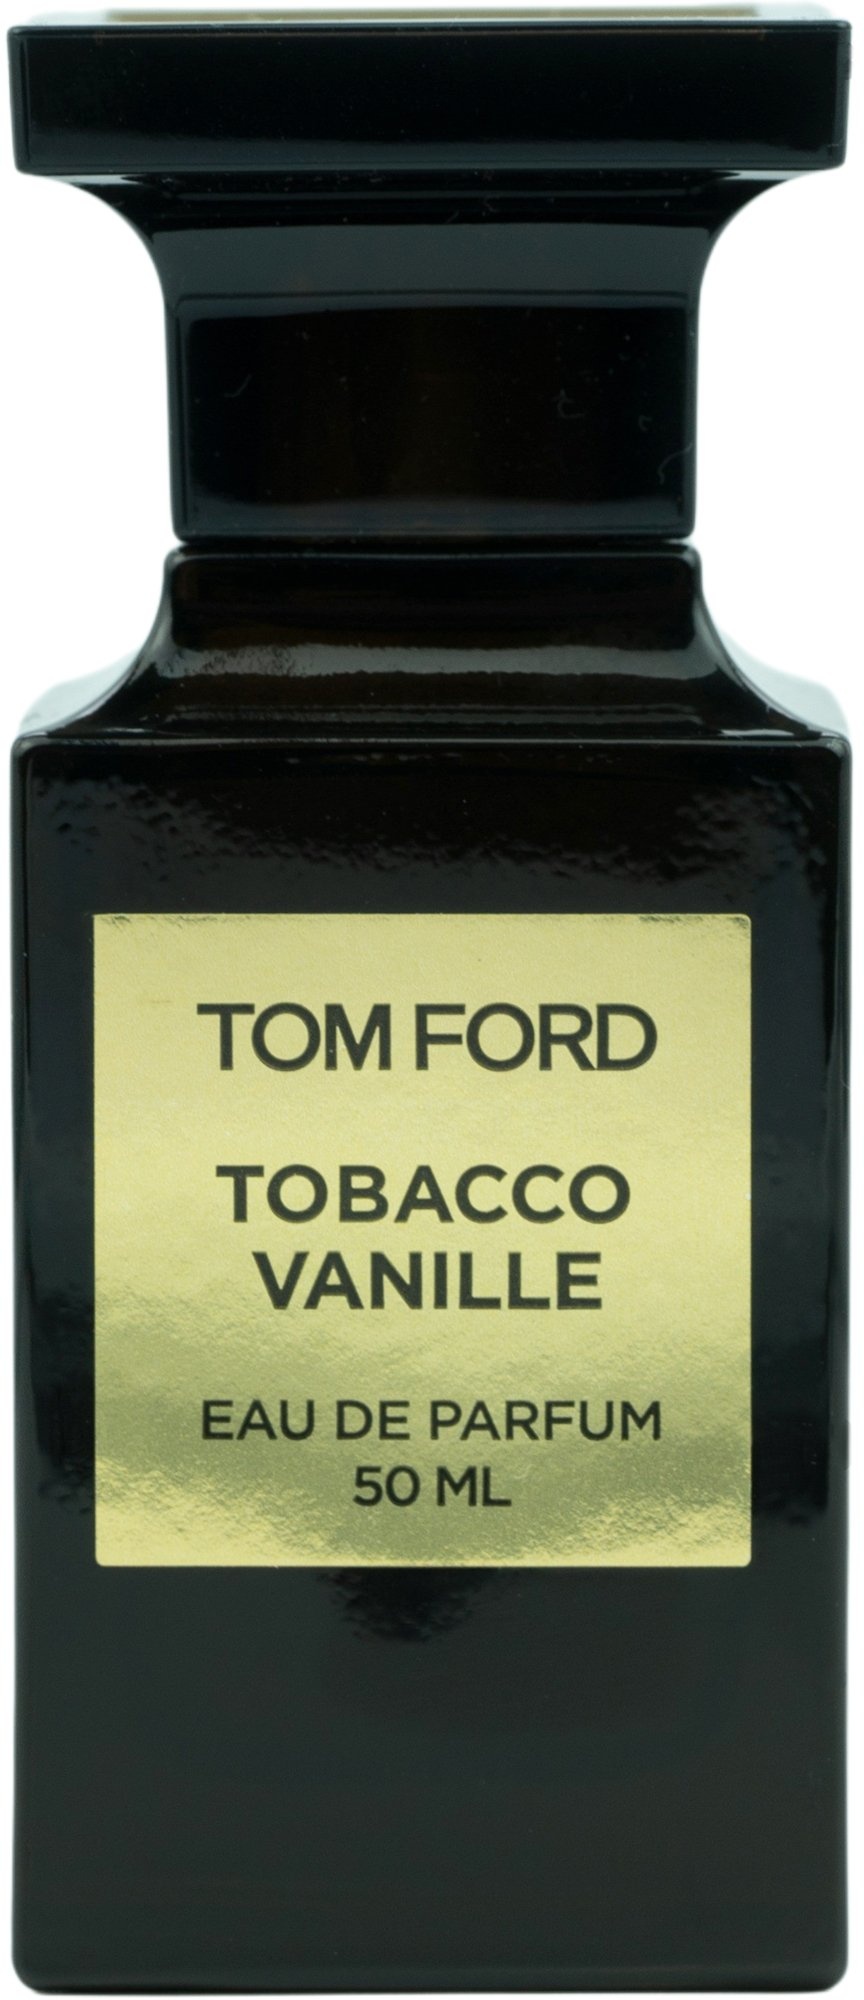 Bild von Tobacco Vanille Eau de Parfum 30 ml